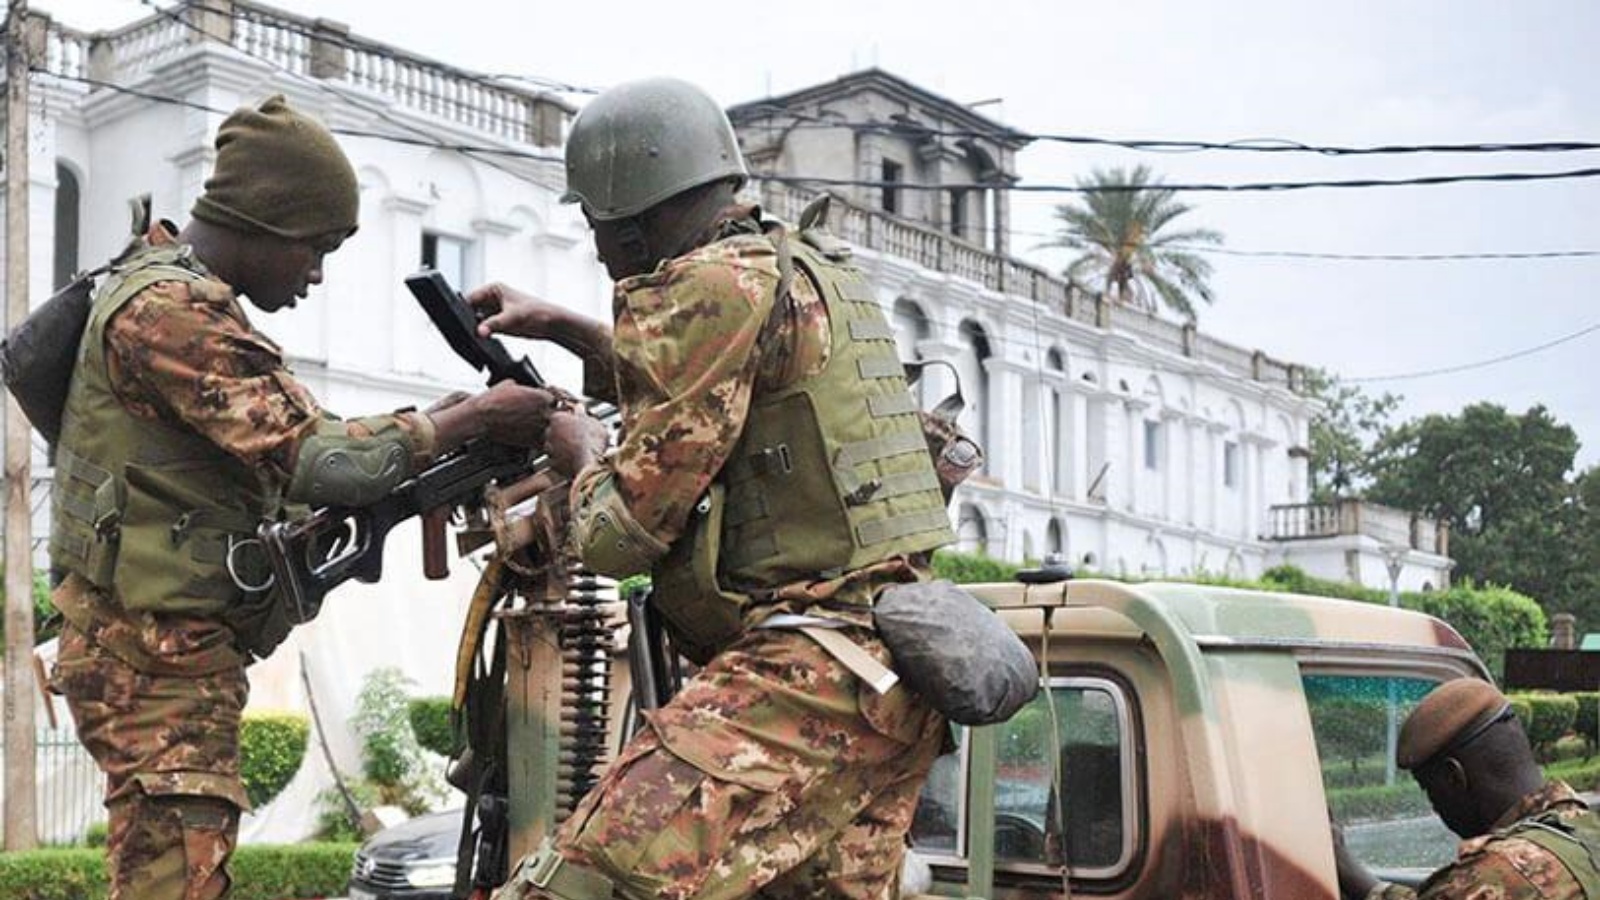 جنود ماليون يقفون في حراسة مركبة عسكرية خارج القصر الرئاسي في باماكو. (أرشيفية)